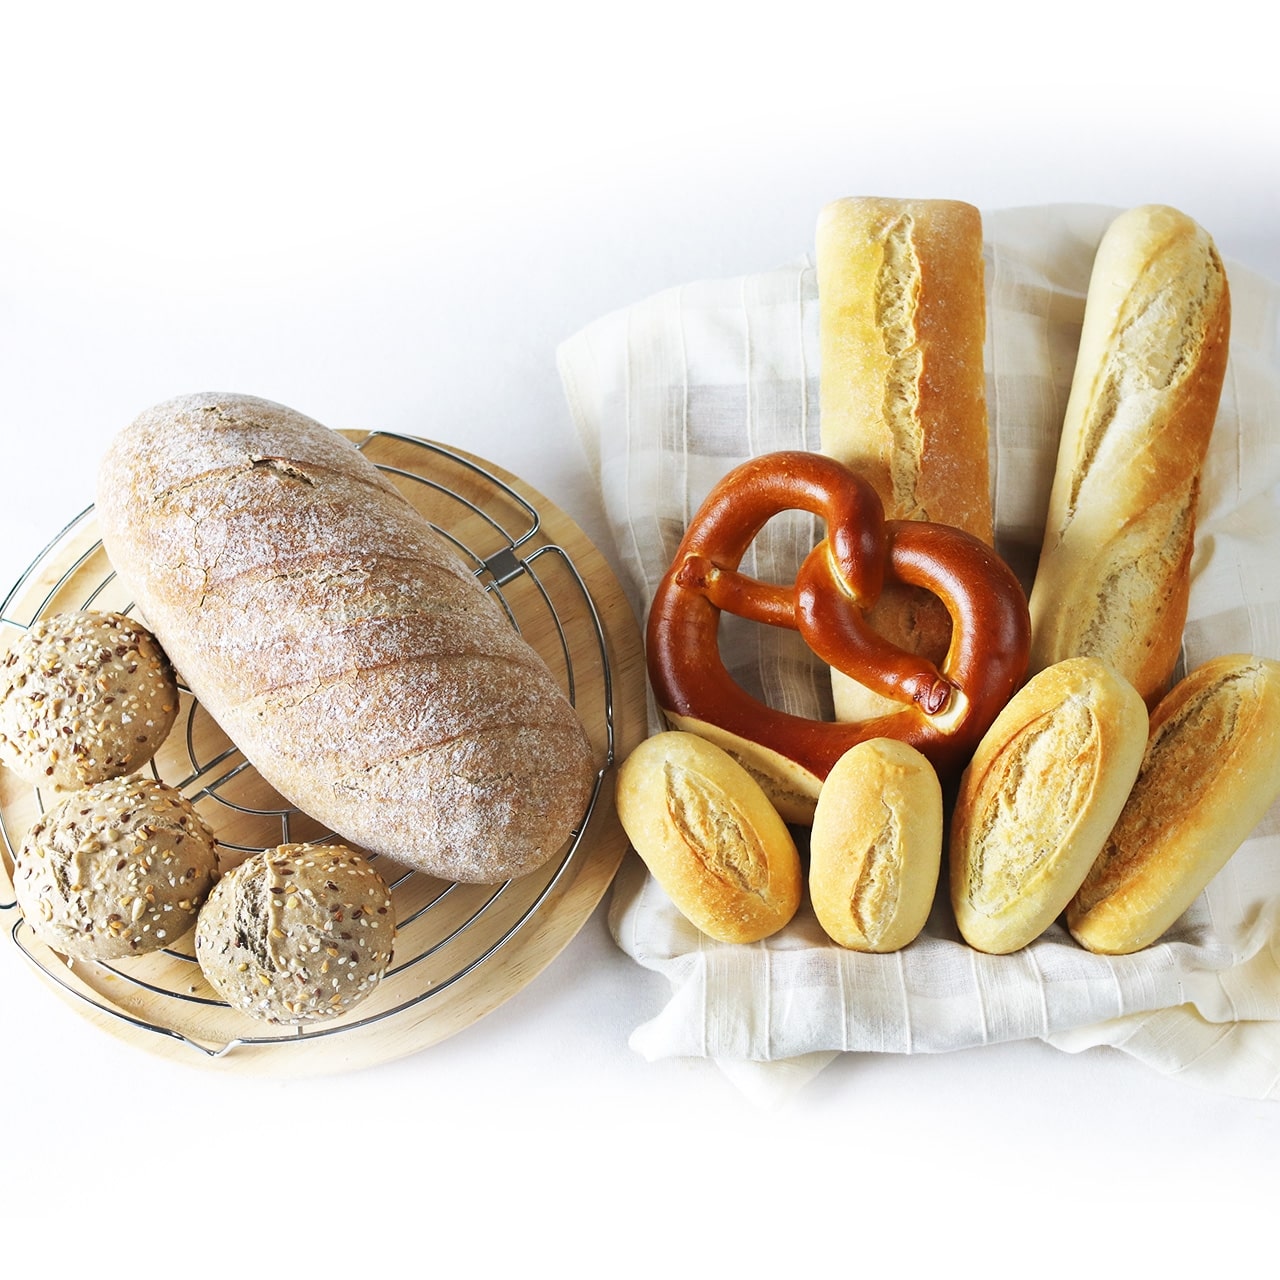 【サンプル セット】7種類のお食事パンお味見用セット